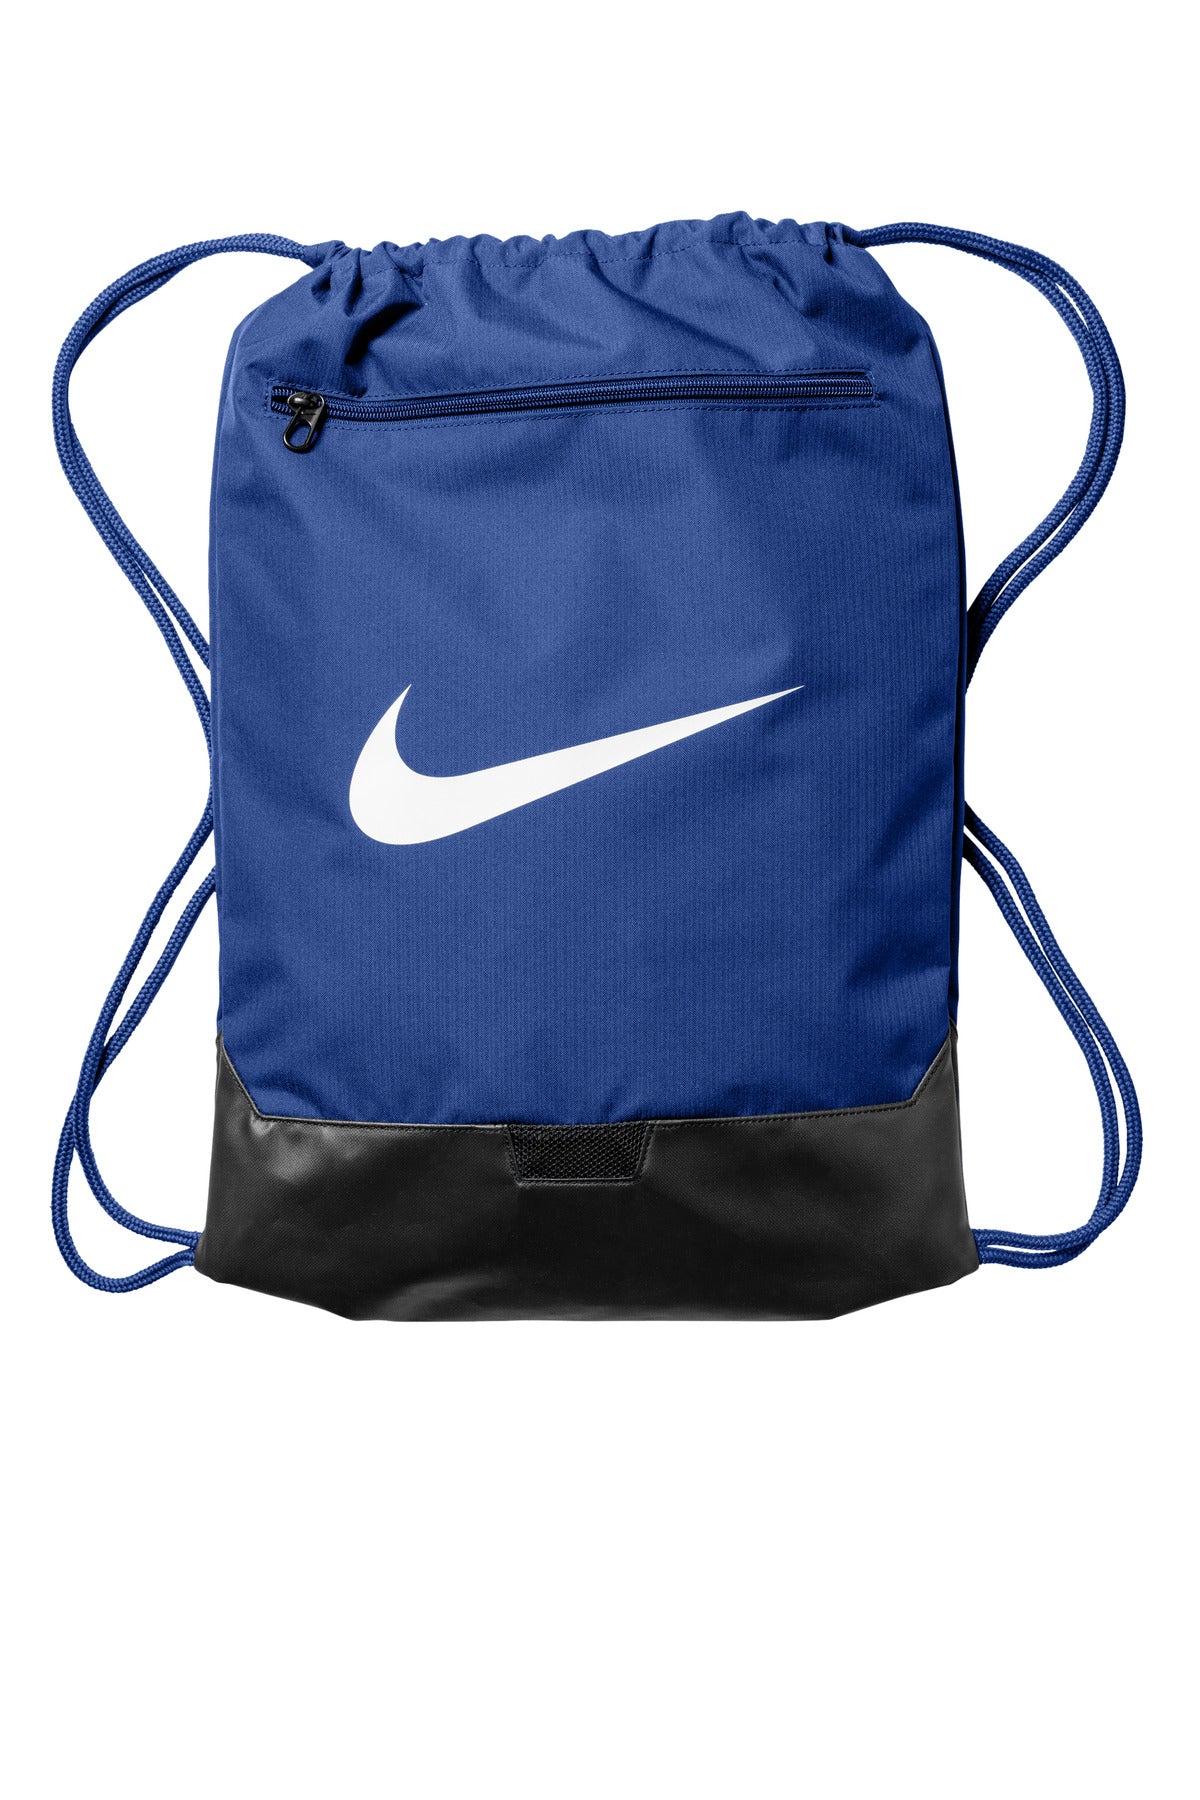 Bags Game Royal OSFA Nike